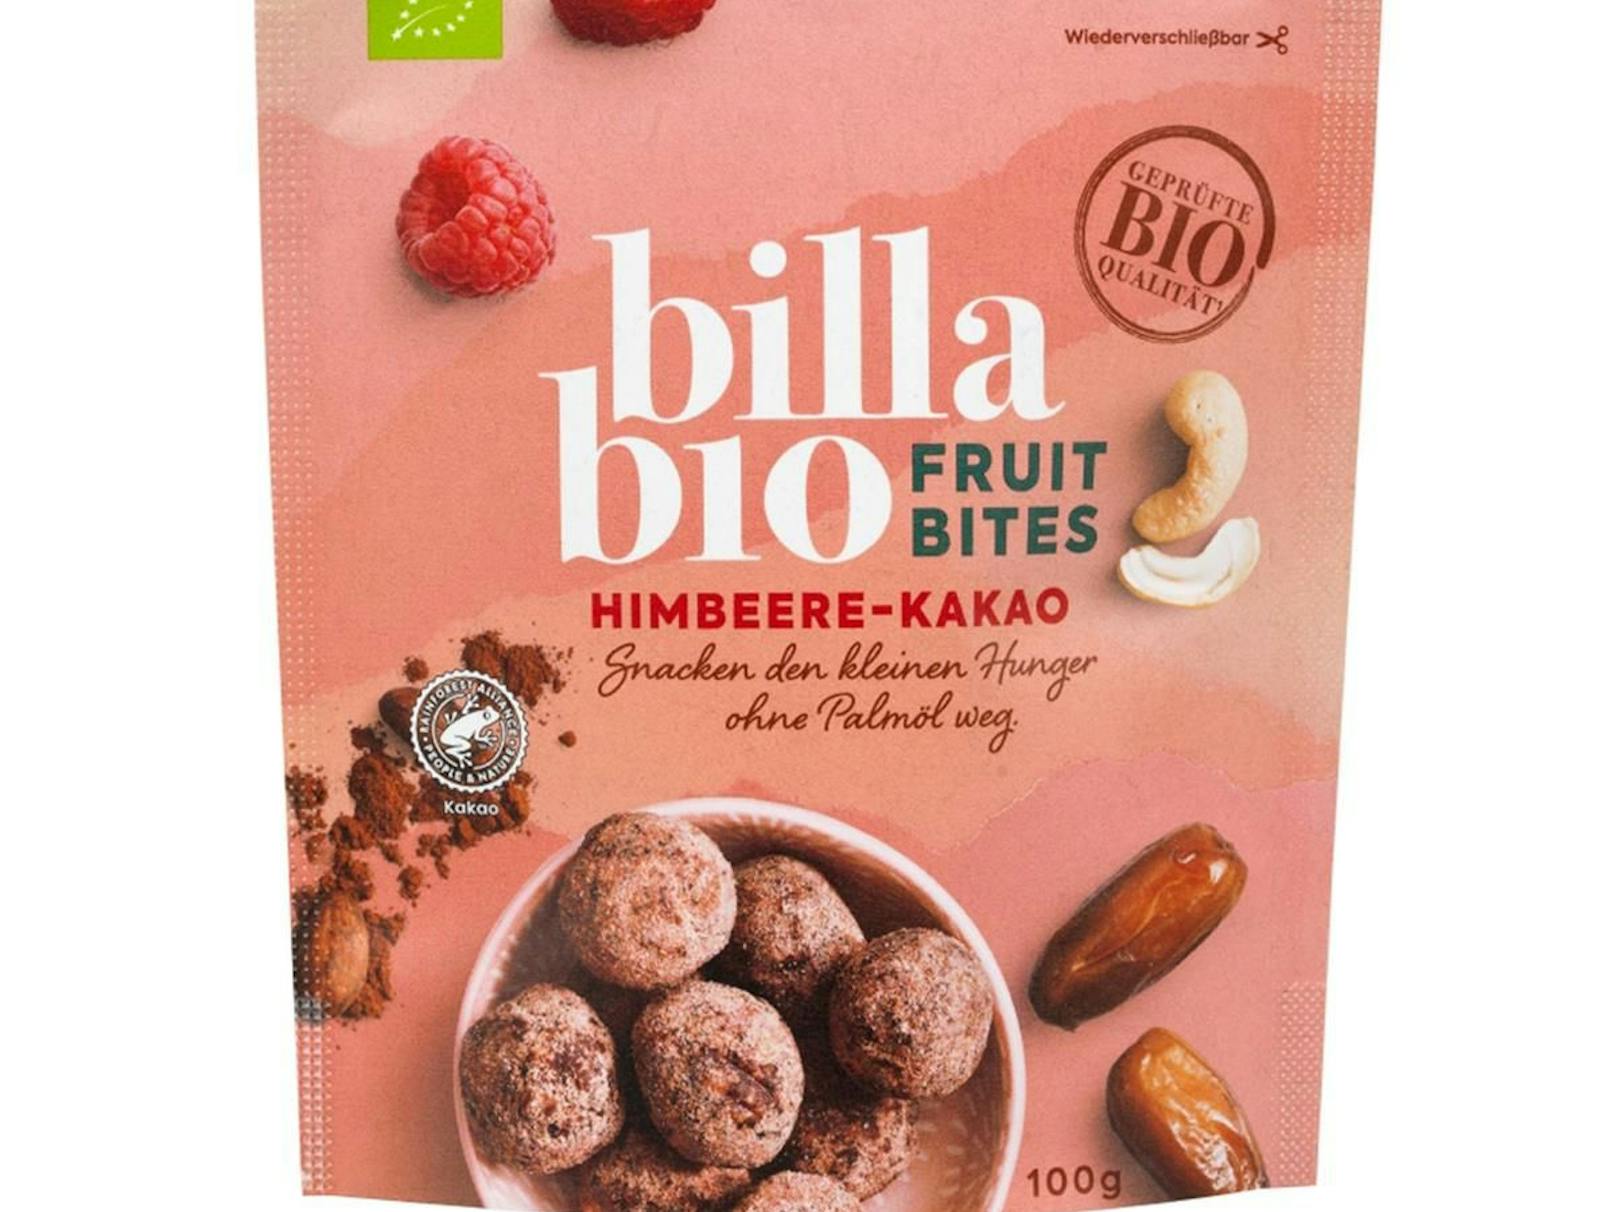 Vom Rückruf betroffen: Das Produkt Billa Bio Fruit Bites Himbeere-Kakao 100g.